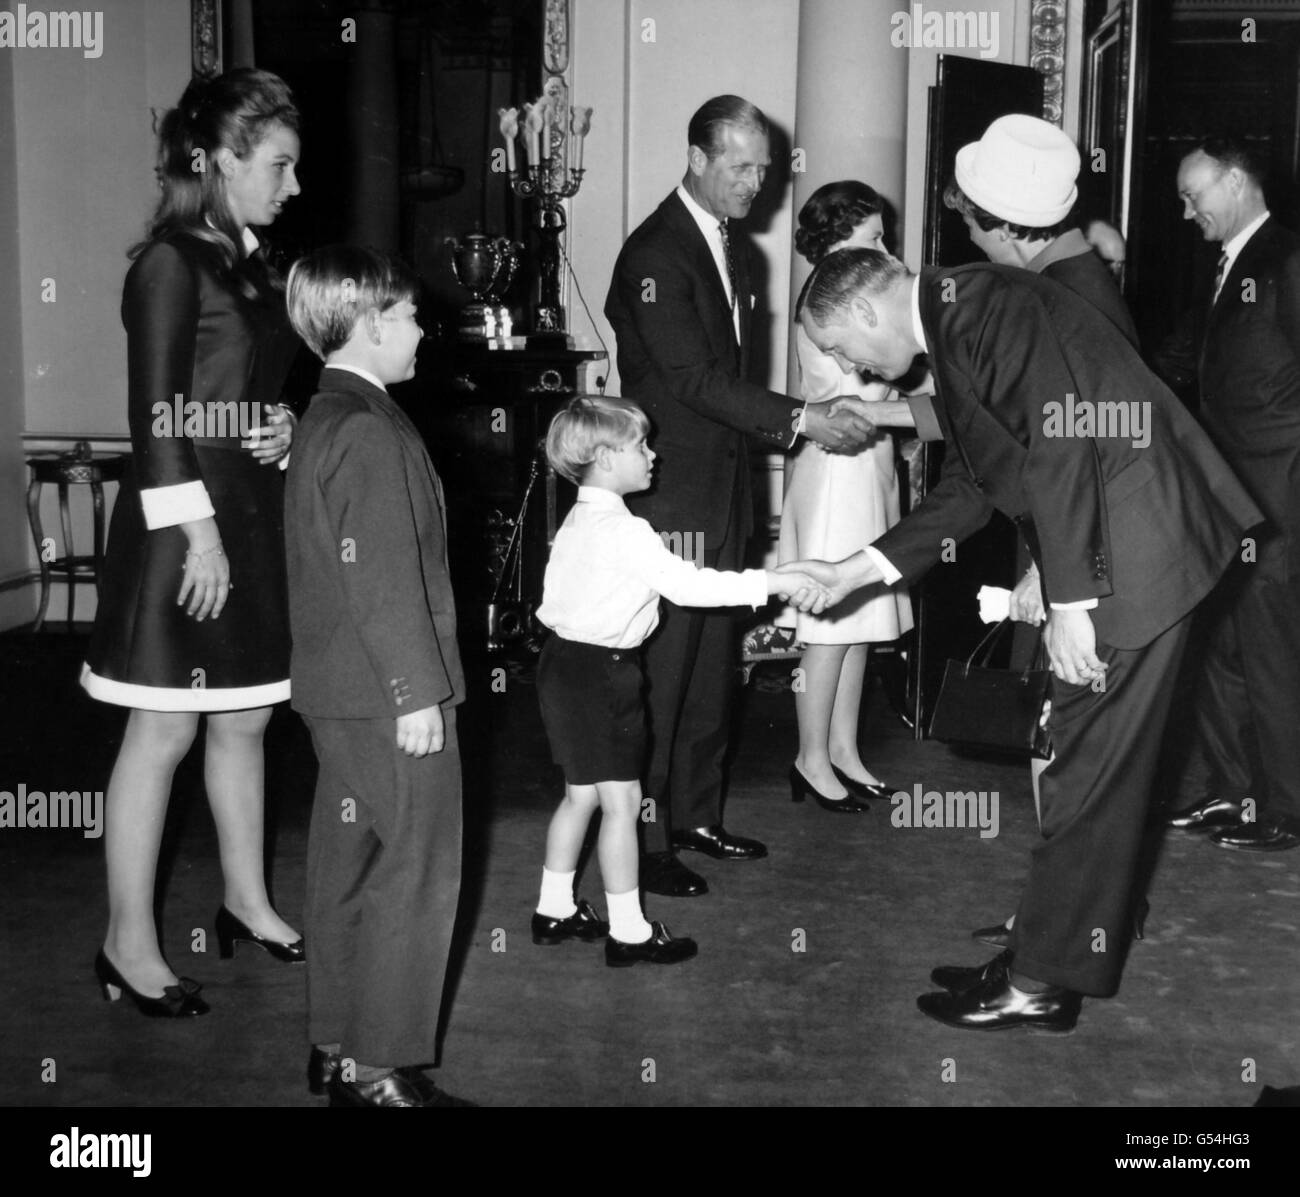 Image - La reine Elizabeth II et Neil Armstrong - Buckingham Palace Banque D'Images